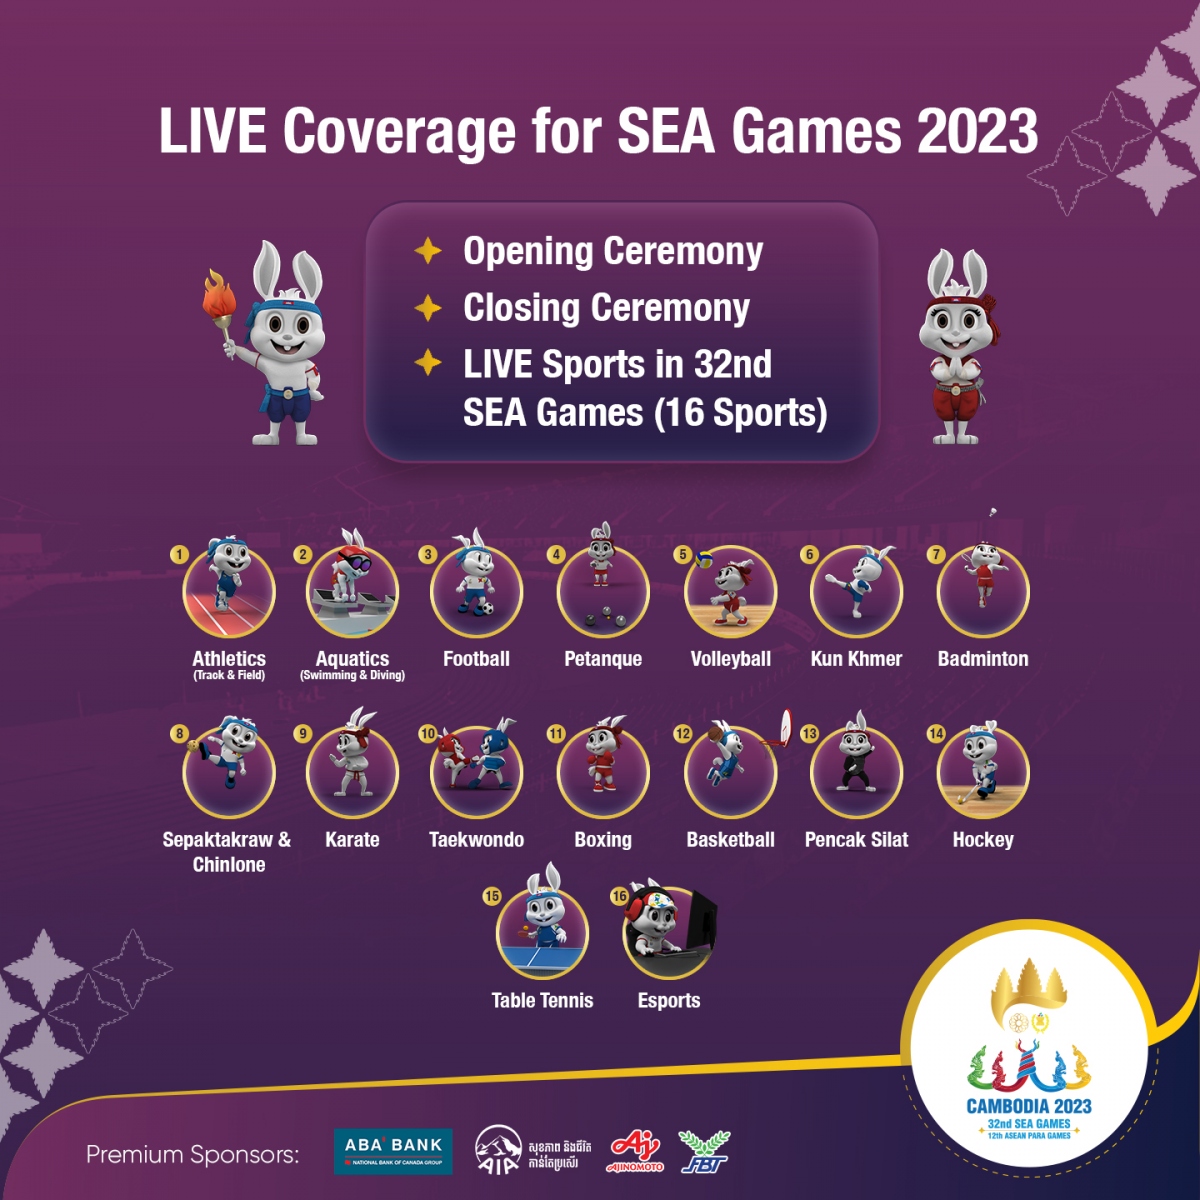 Chỉ có 5 môn võ được truyền hình trực tiếp tại SEA Games 32 - Ảnh 1